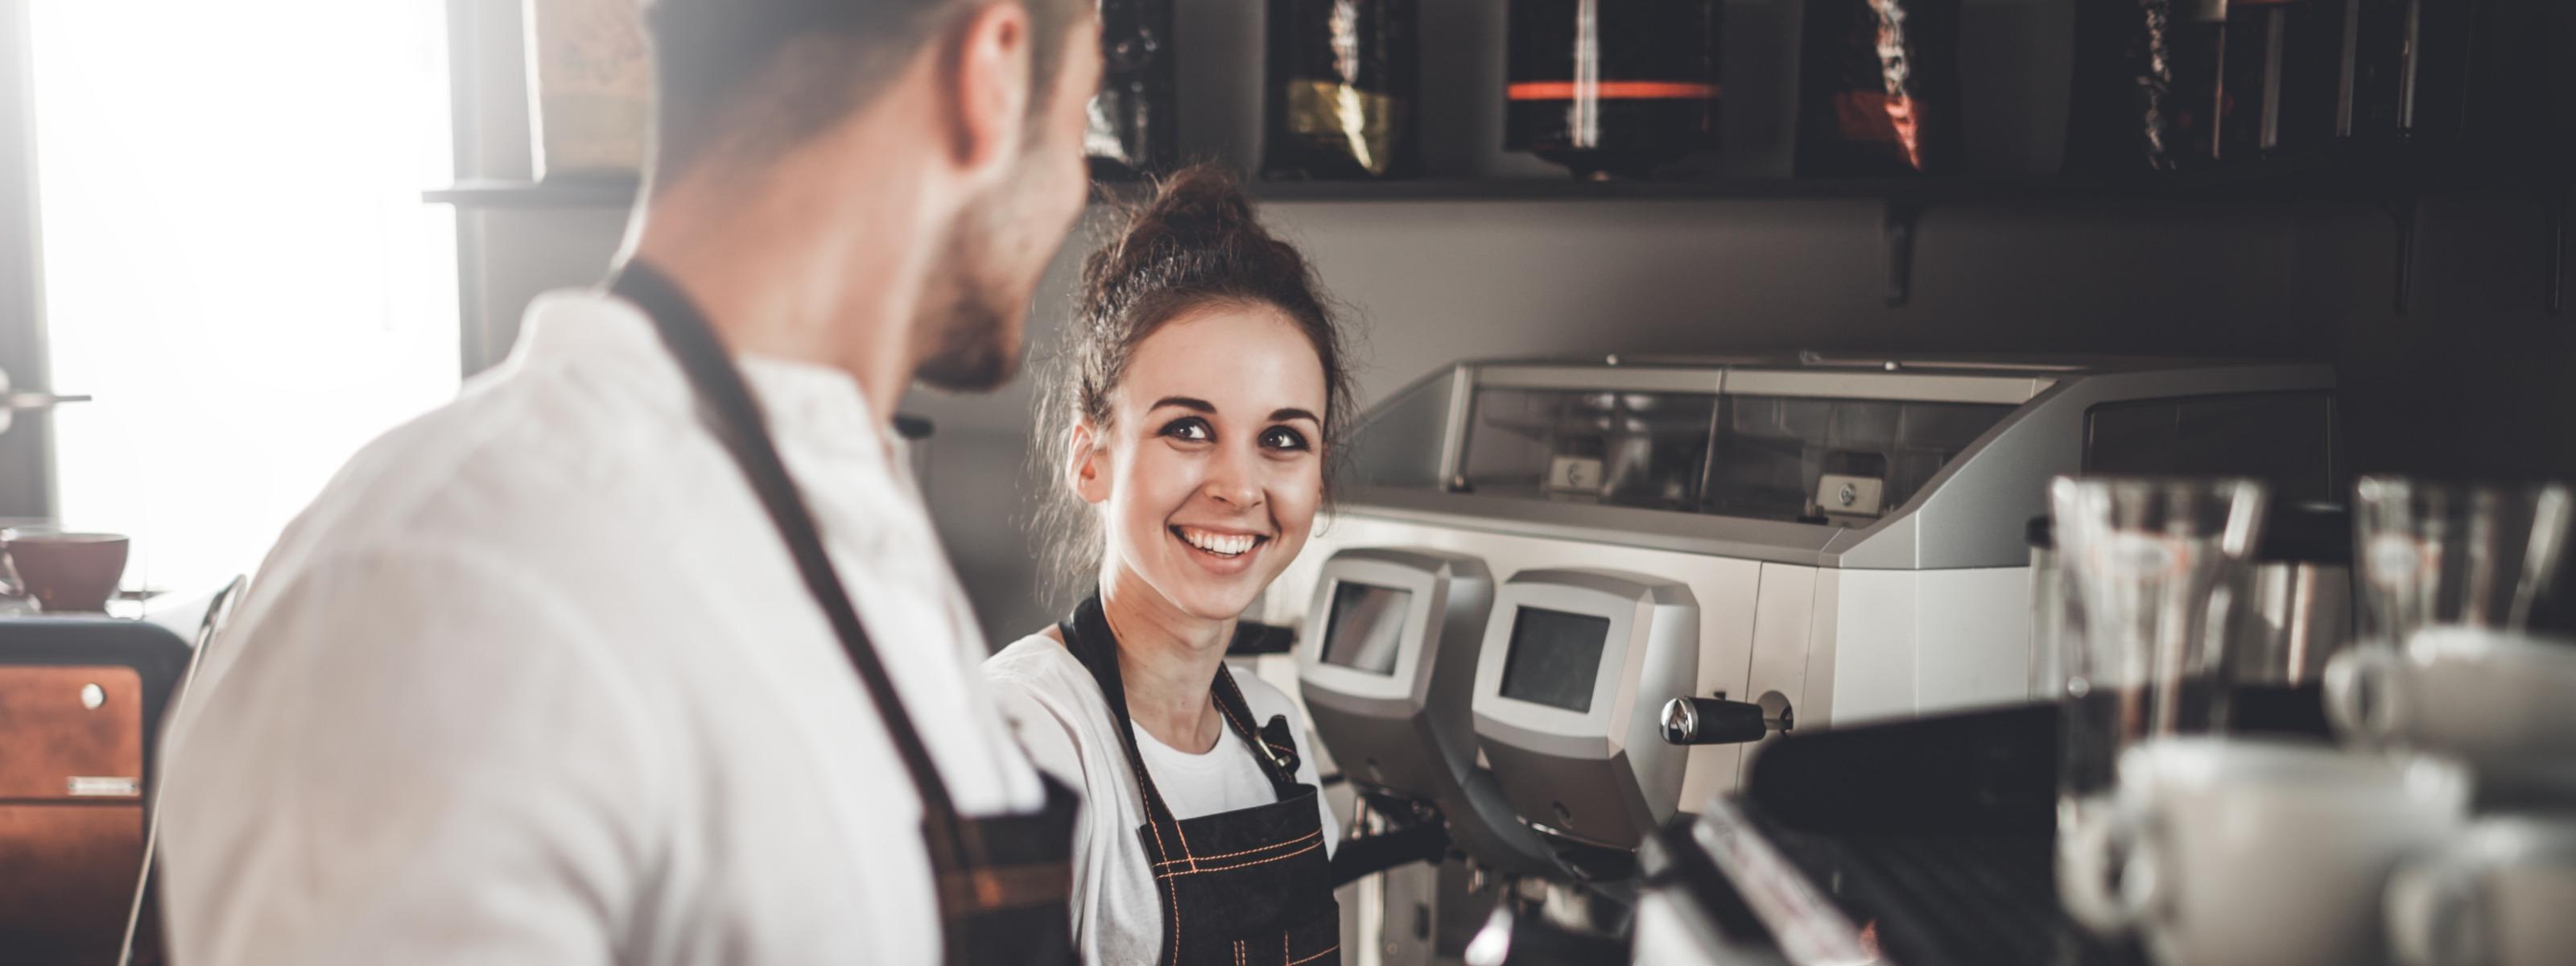 Person lächelt andere Person an, beide tragen Schürzen und stehen vor Kaffemaschine